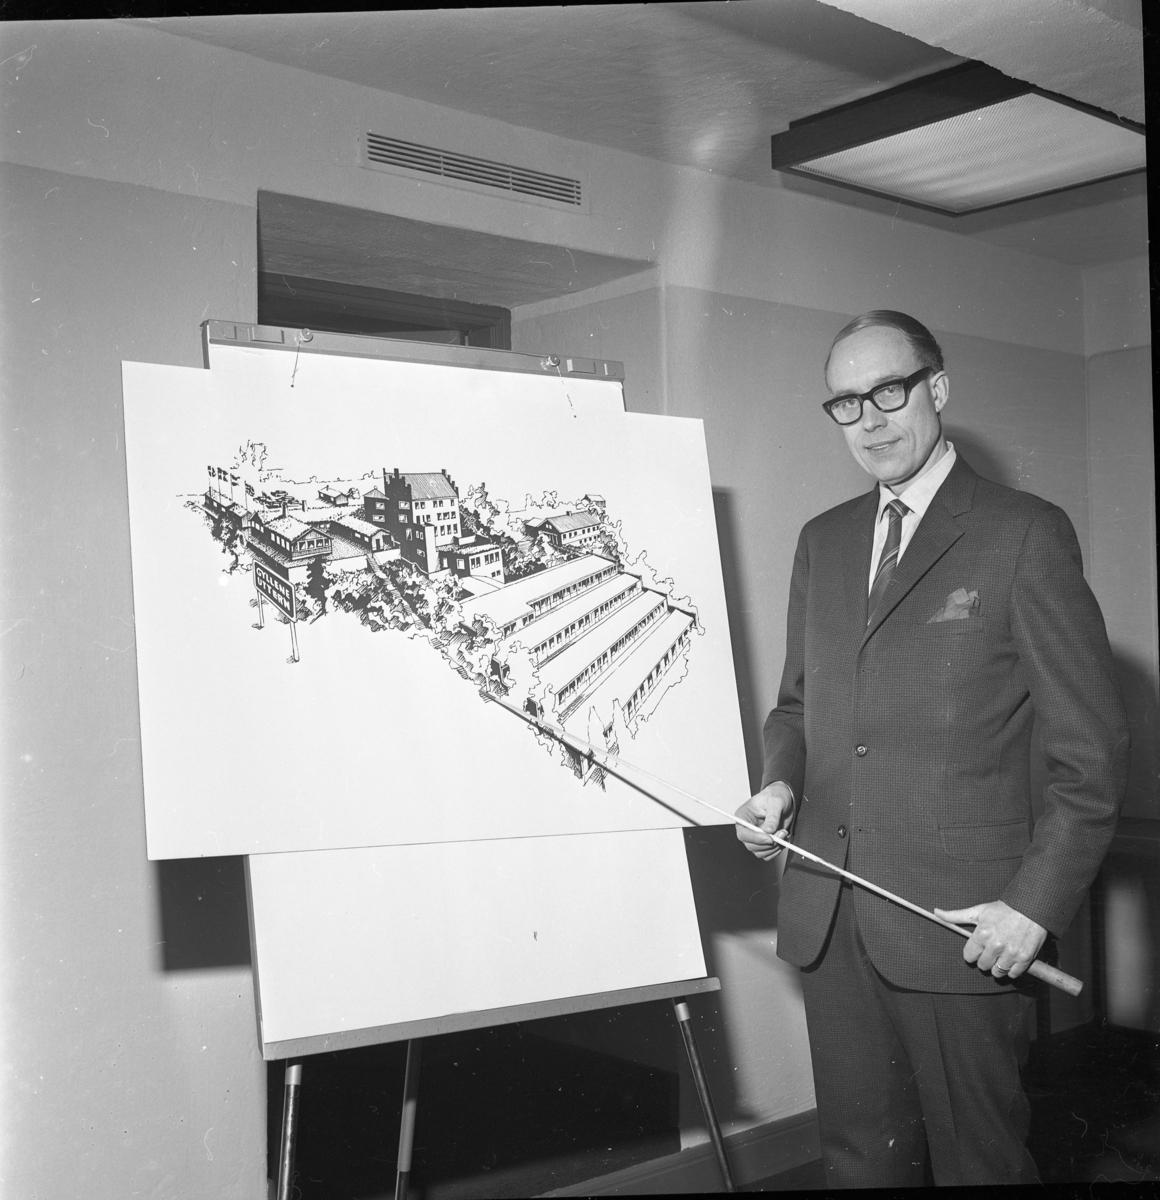 En man med glasögon, kostym och slips pekar med en käpp på en illustration av restaurang/hotell Gyllene Uttern efter tänkt tillbyggnad.